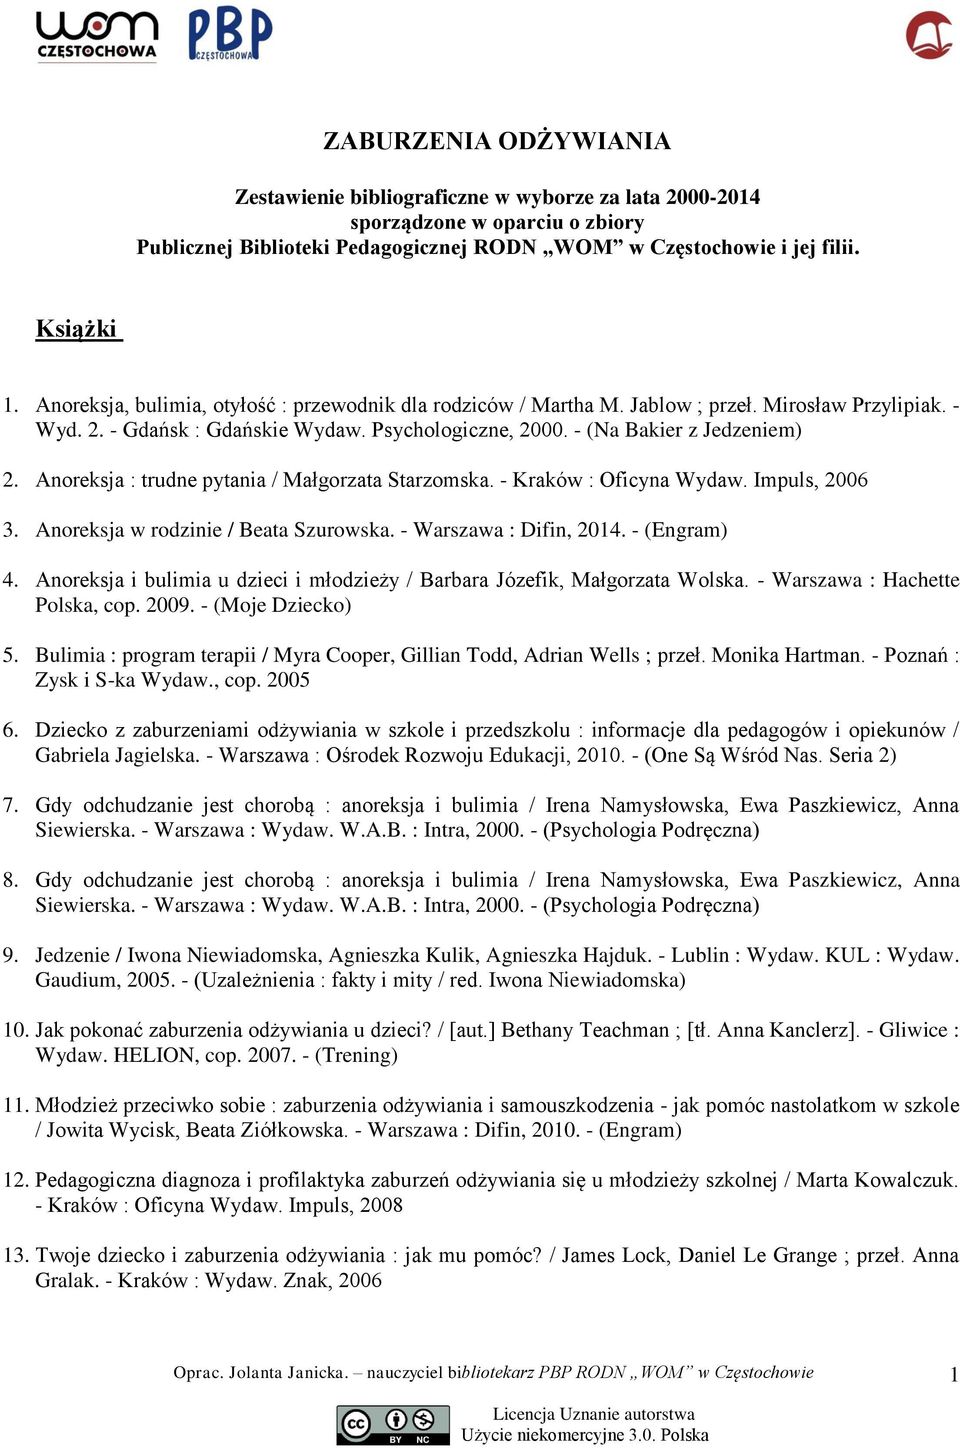 Anoreksja : trudne pytania / Małgorzata Starzomska. - Kraków : Oficyna Wydaw. Impuls, 2006 3. Anoreksja w rodzinie / Beata Szurowska. - Warszawa : Difin, 2014. - (Engram) 4.